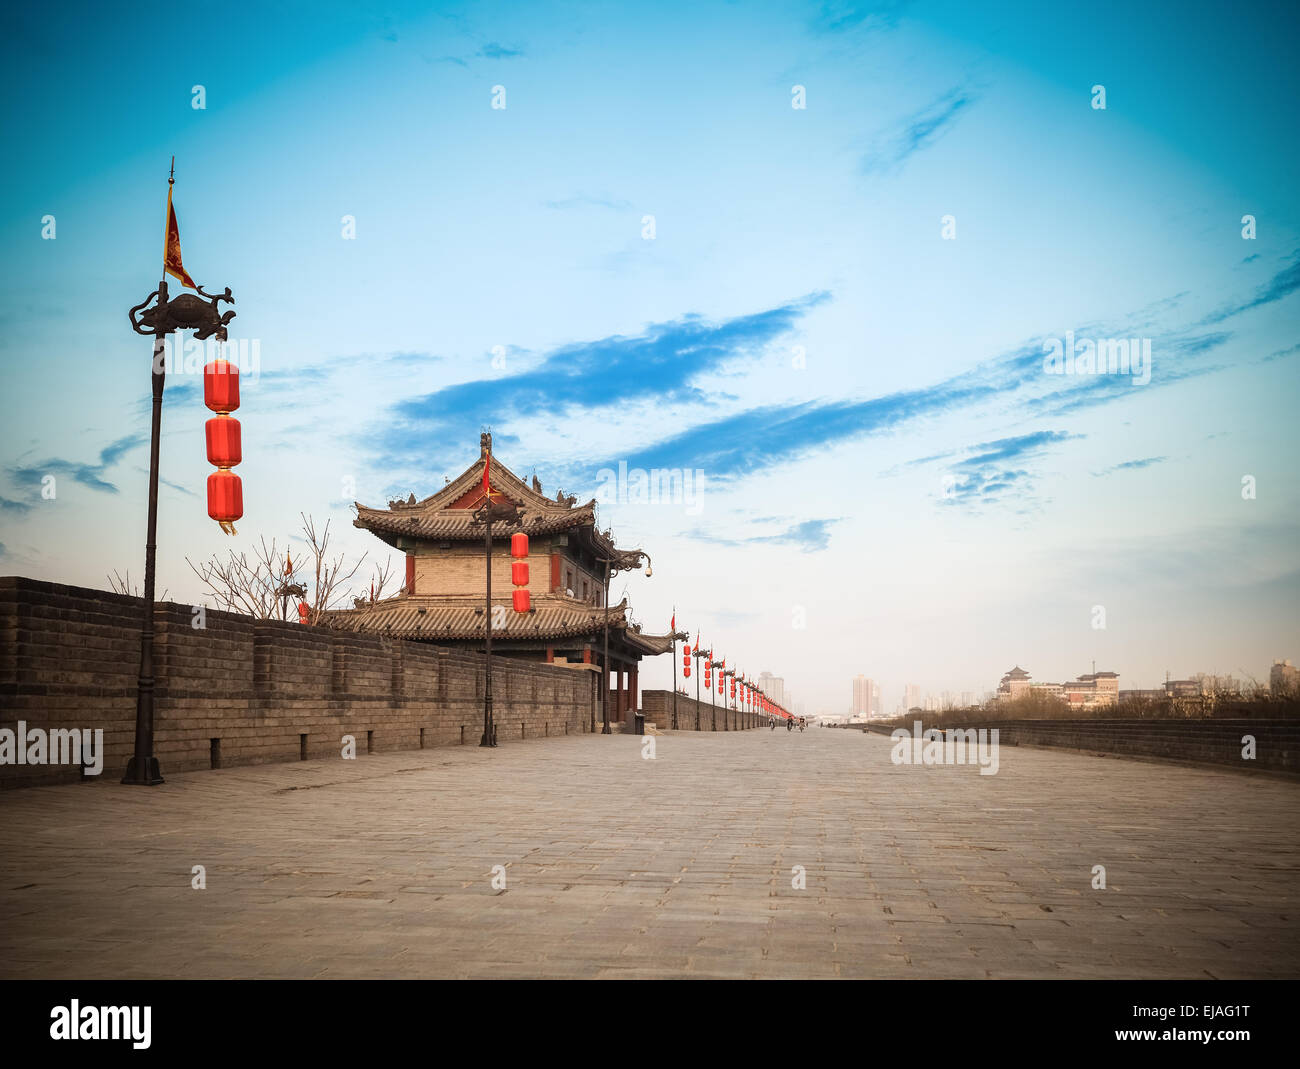 xian city wall Stock Photo